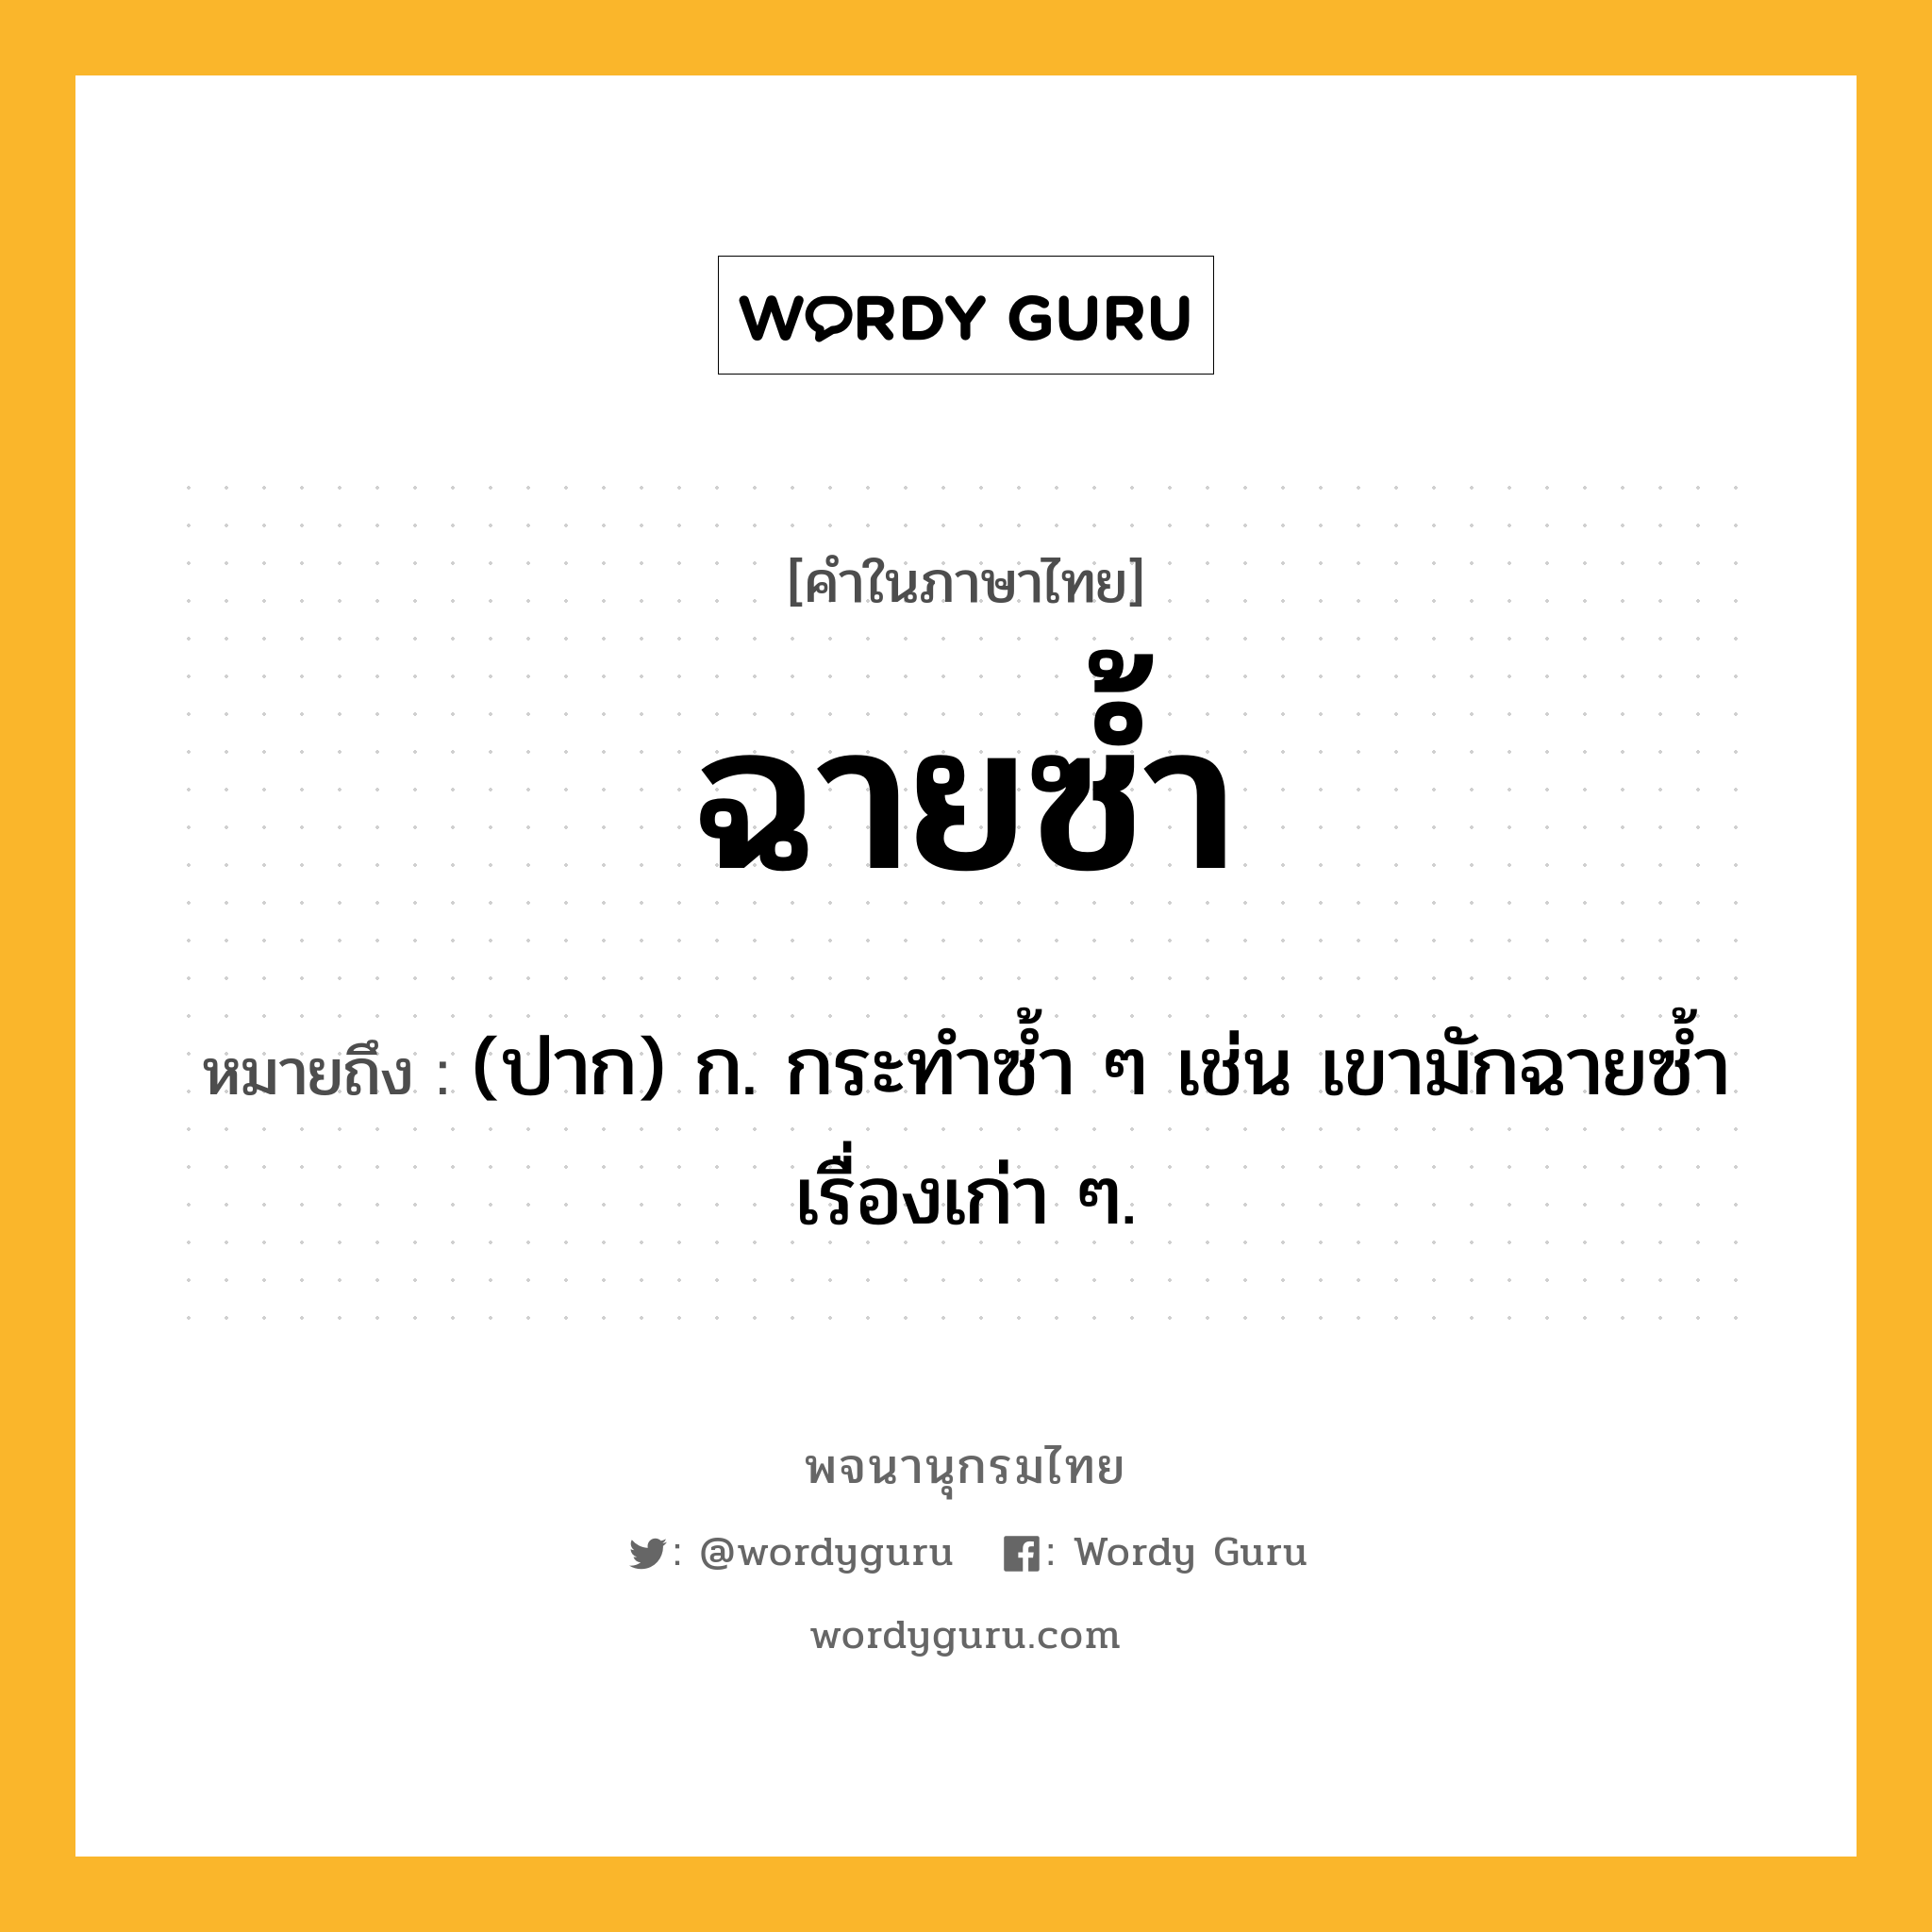 ฉายซ้ำ หมายถึงอะไร?, คำในภาษาไทย ฉายซ้ำ หมายถึง (ปาก) ก. กระทำซ้ำ ๆ เช่น เขามักฉายซ้ำเรื่องเก่า ๆ.